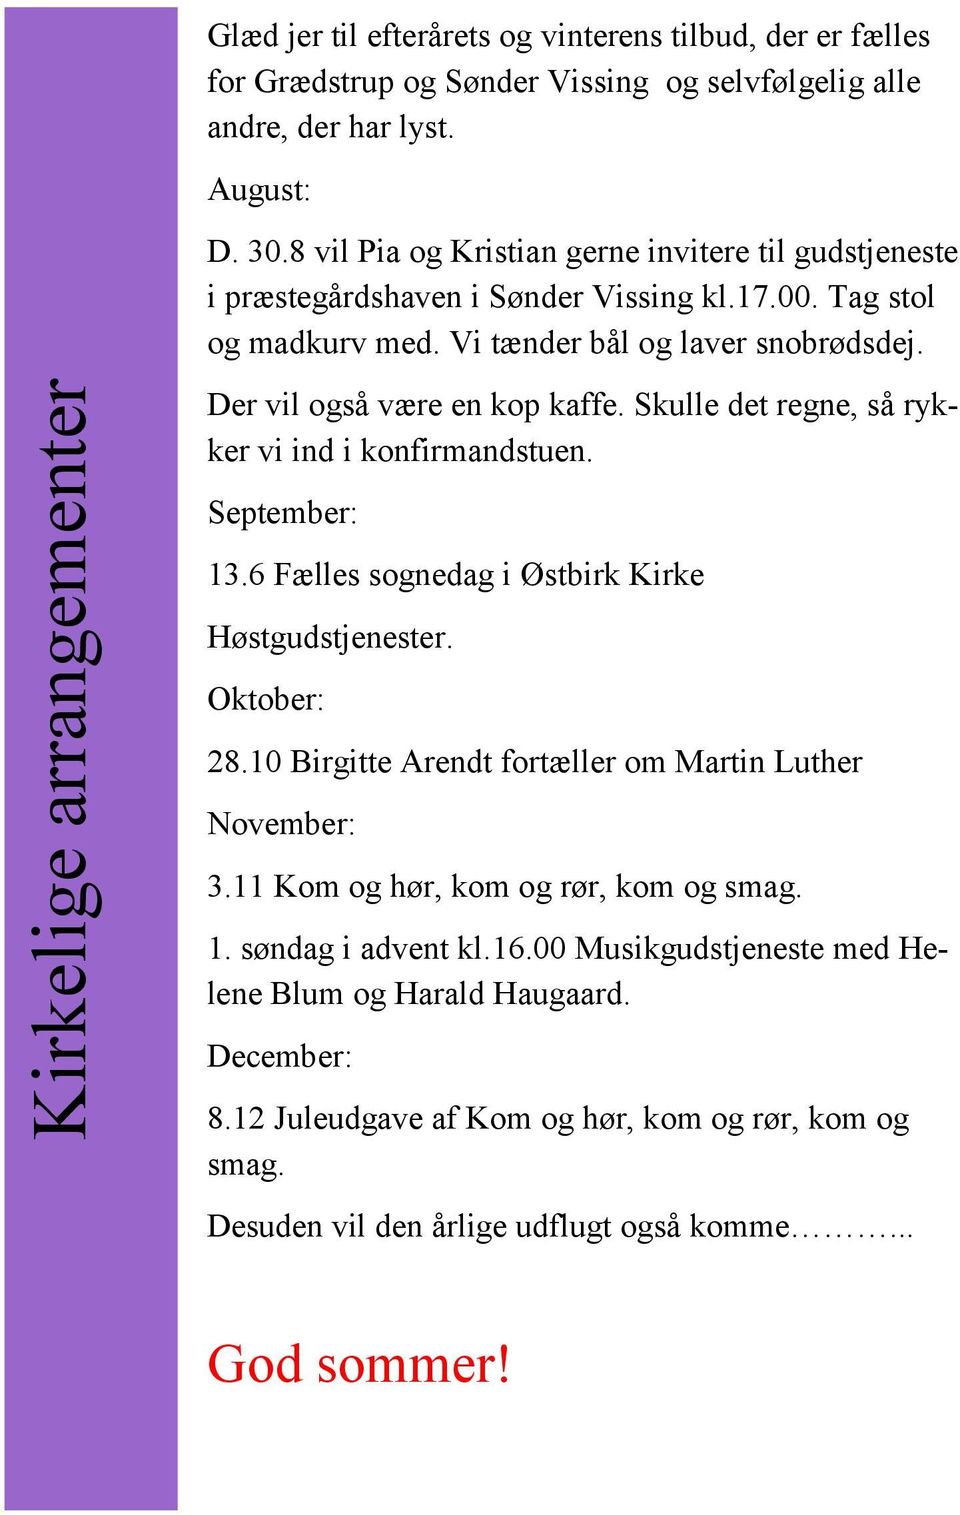 Skulle det regne, så rykker vi ind i konfirmandstuen. September: 13.6 Fælles sognedag i Østbirk Kirke Høstgudstjenester. Oktober: 28.10 Birgitte Arendt fortæller om Martin Luther November: 3.